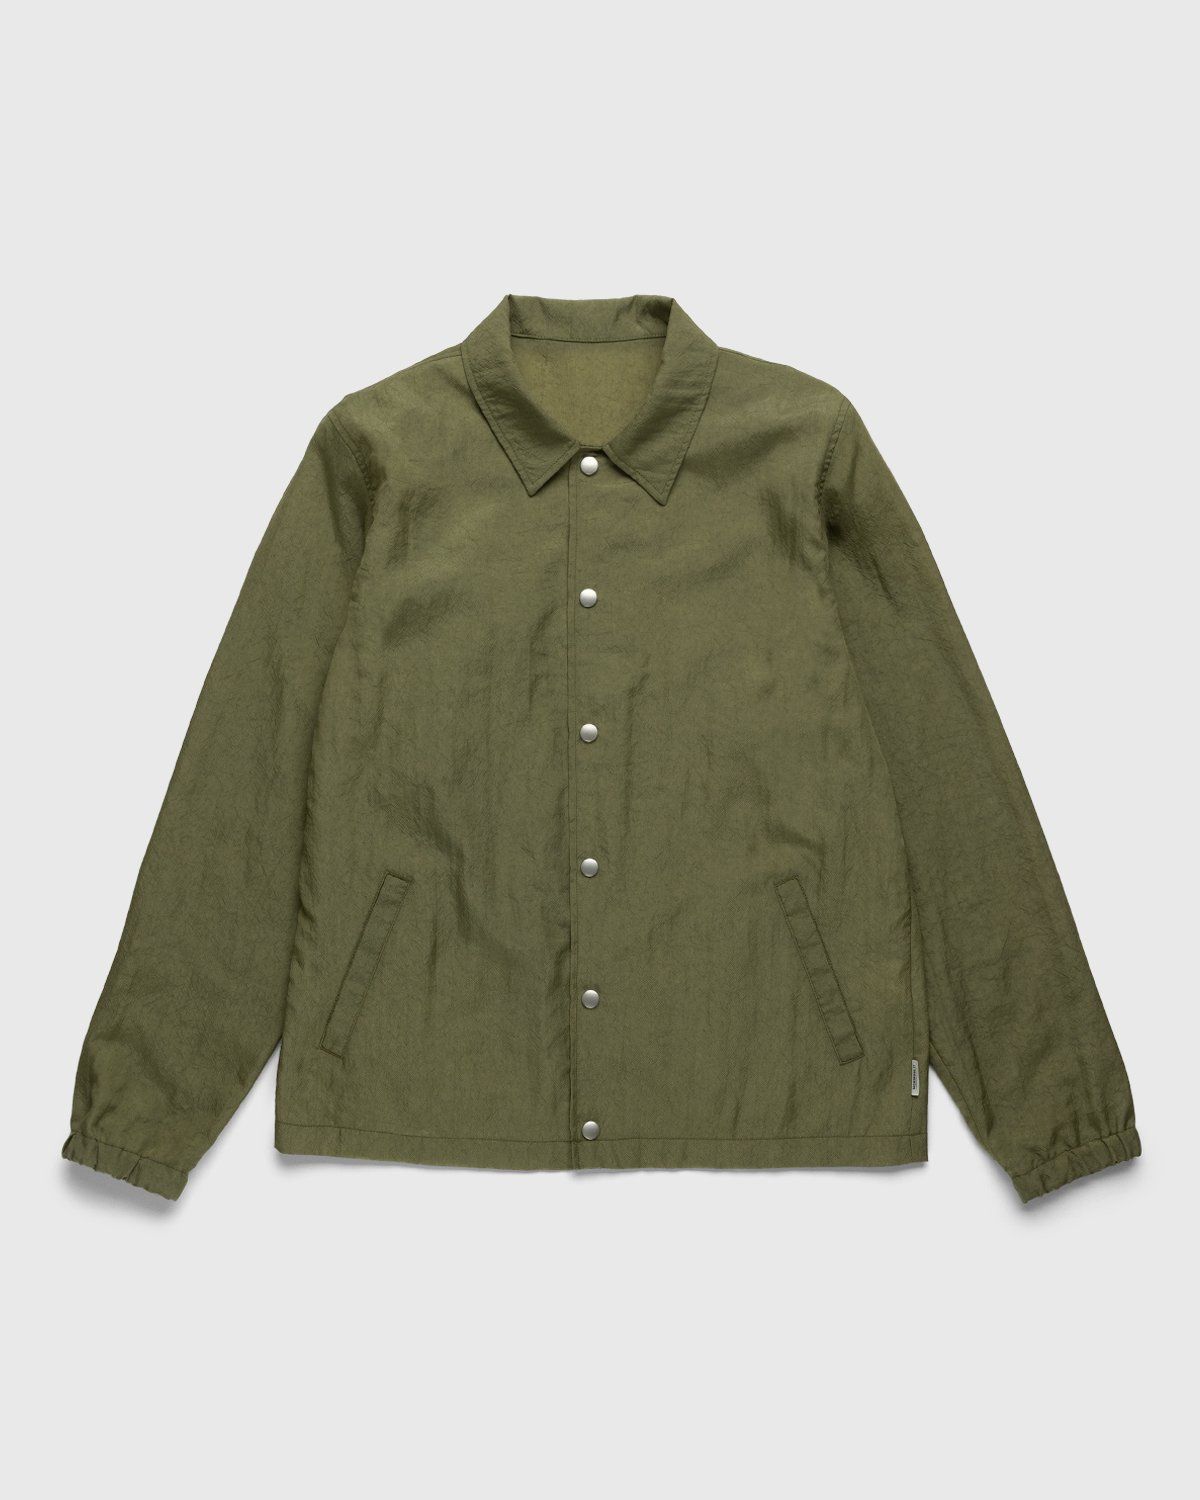 Highsnobiety – Stonewashed Nylon Coach Jacket Olive - Outerwear - Green - Image 1